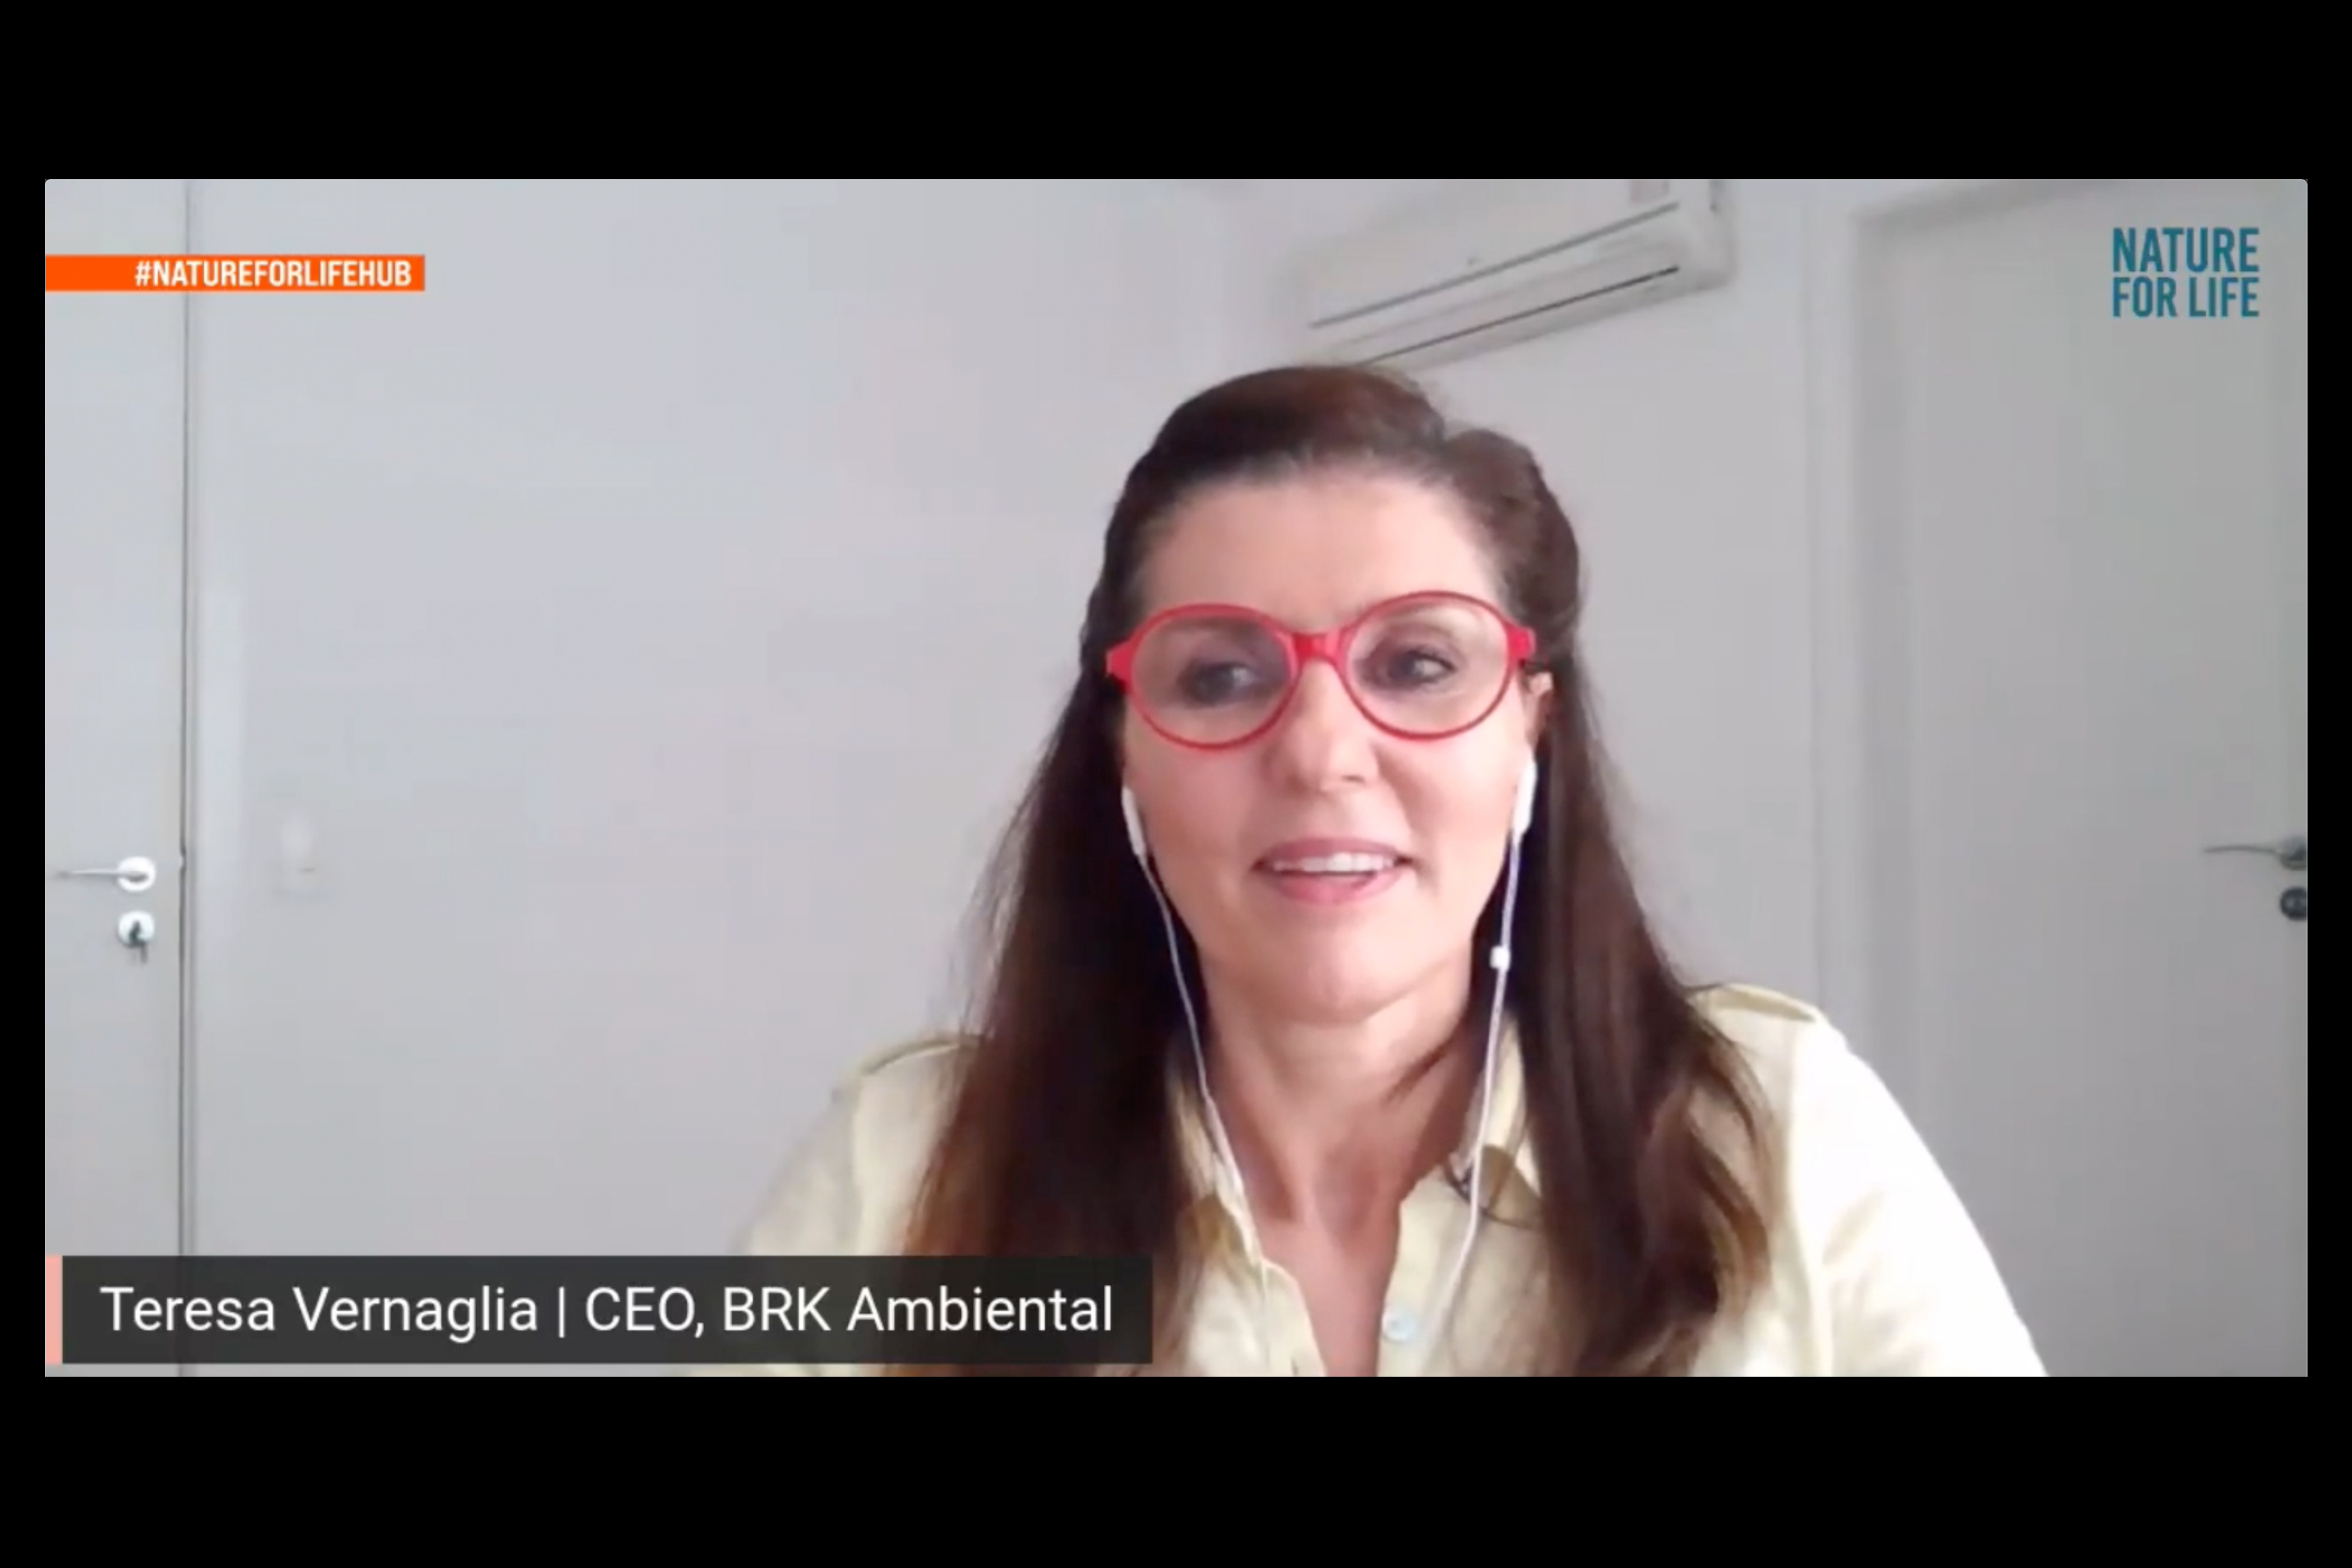 Teresa Vernaglia, CEO, BRK Ambiental